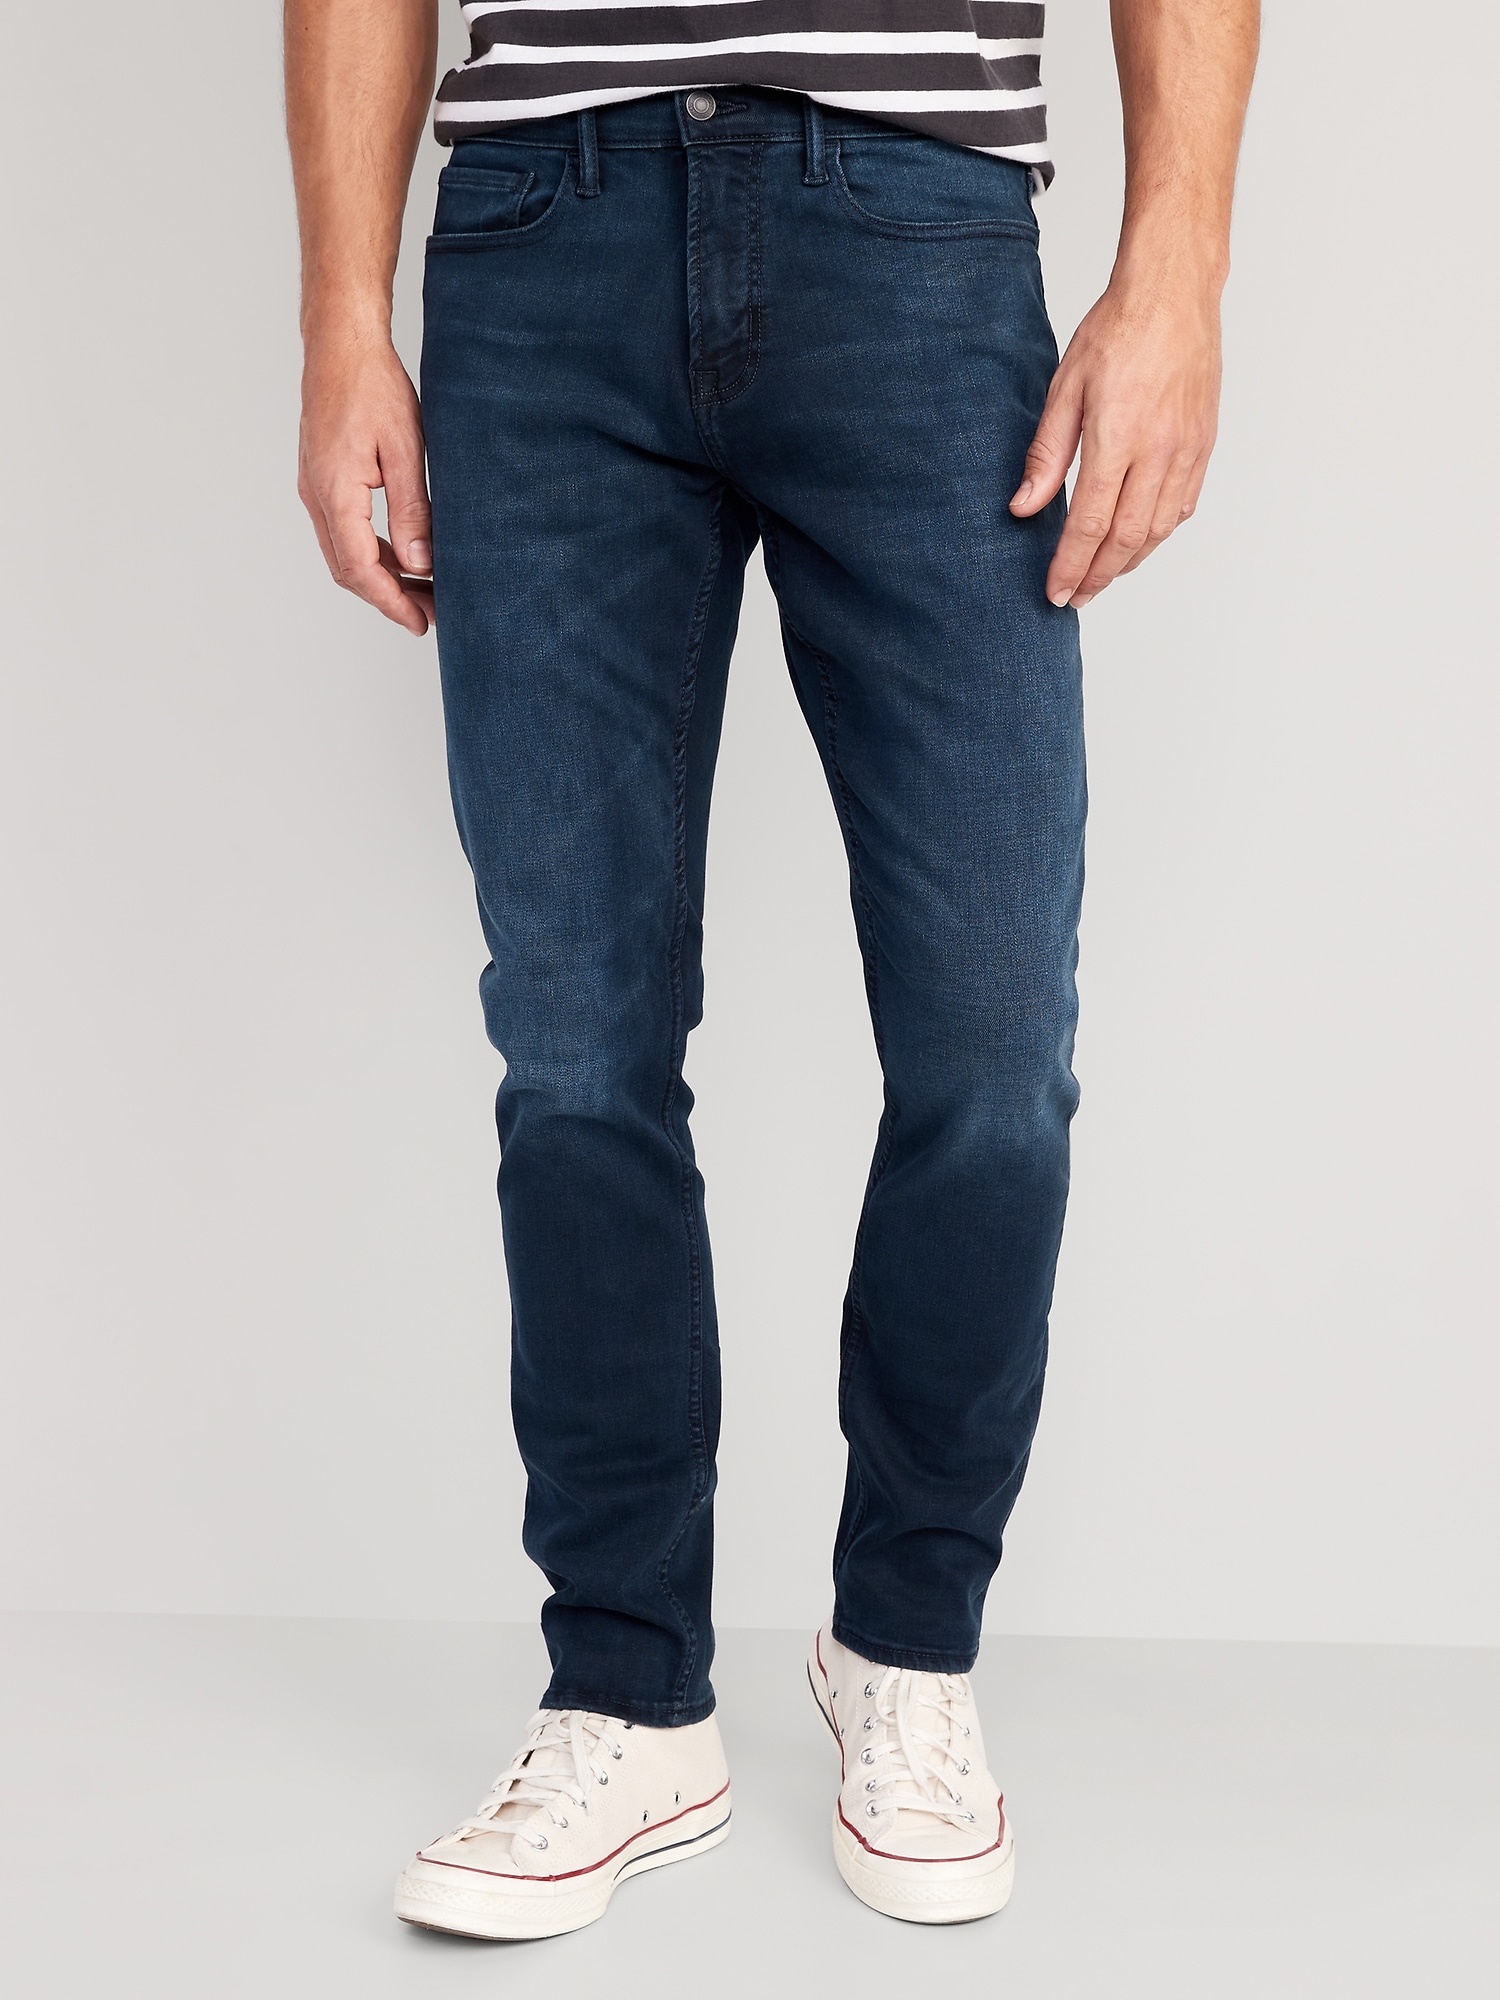 old navy dark wash opp slim jeans waist 32 L 30